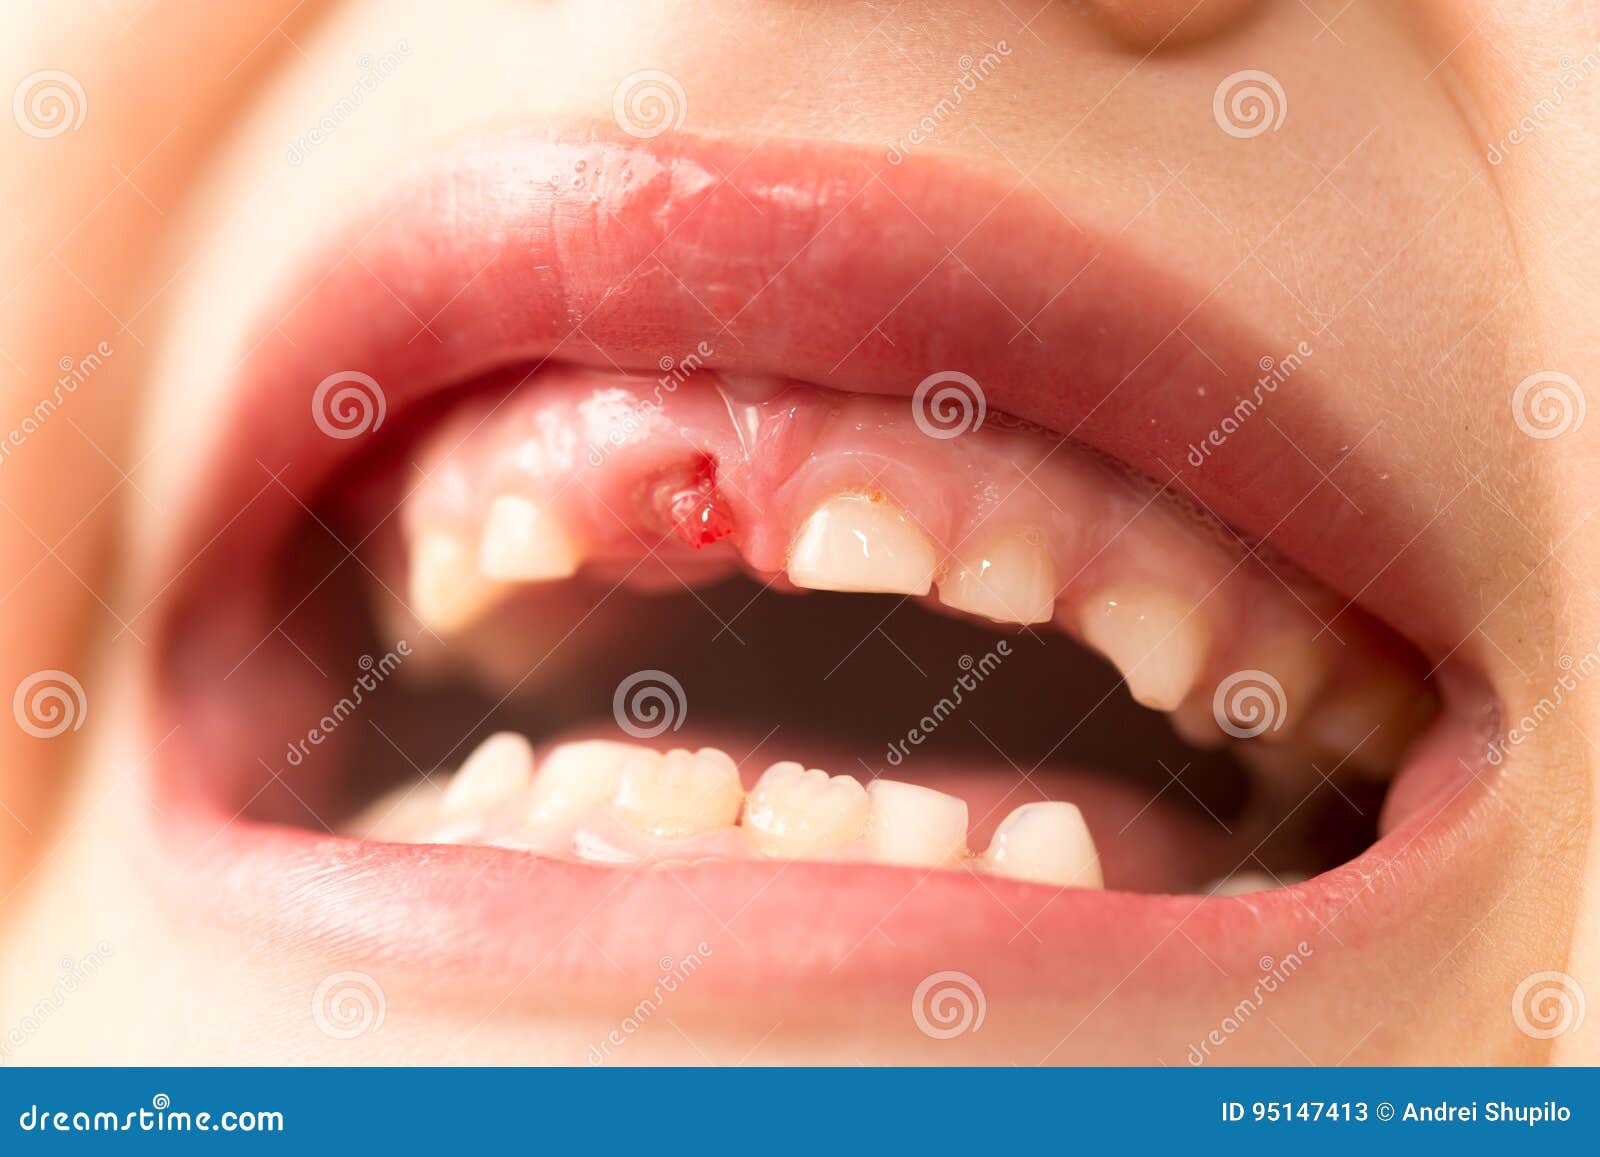 mund ohne zähne